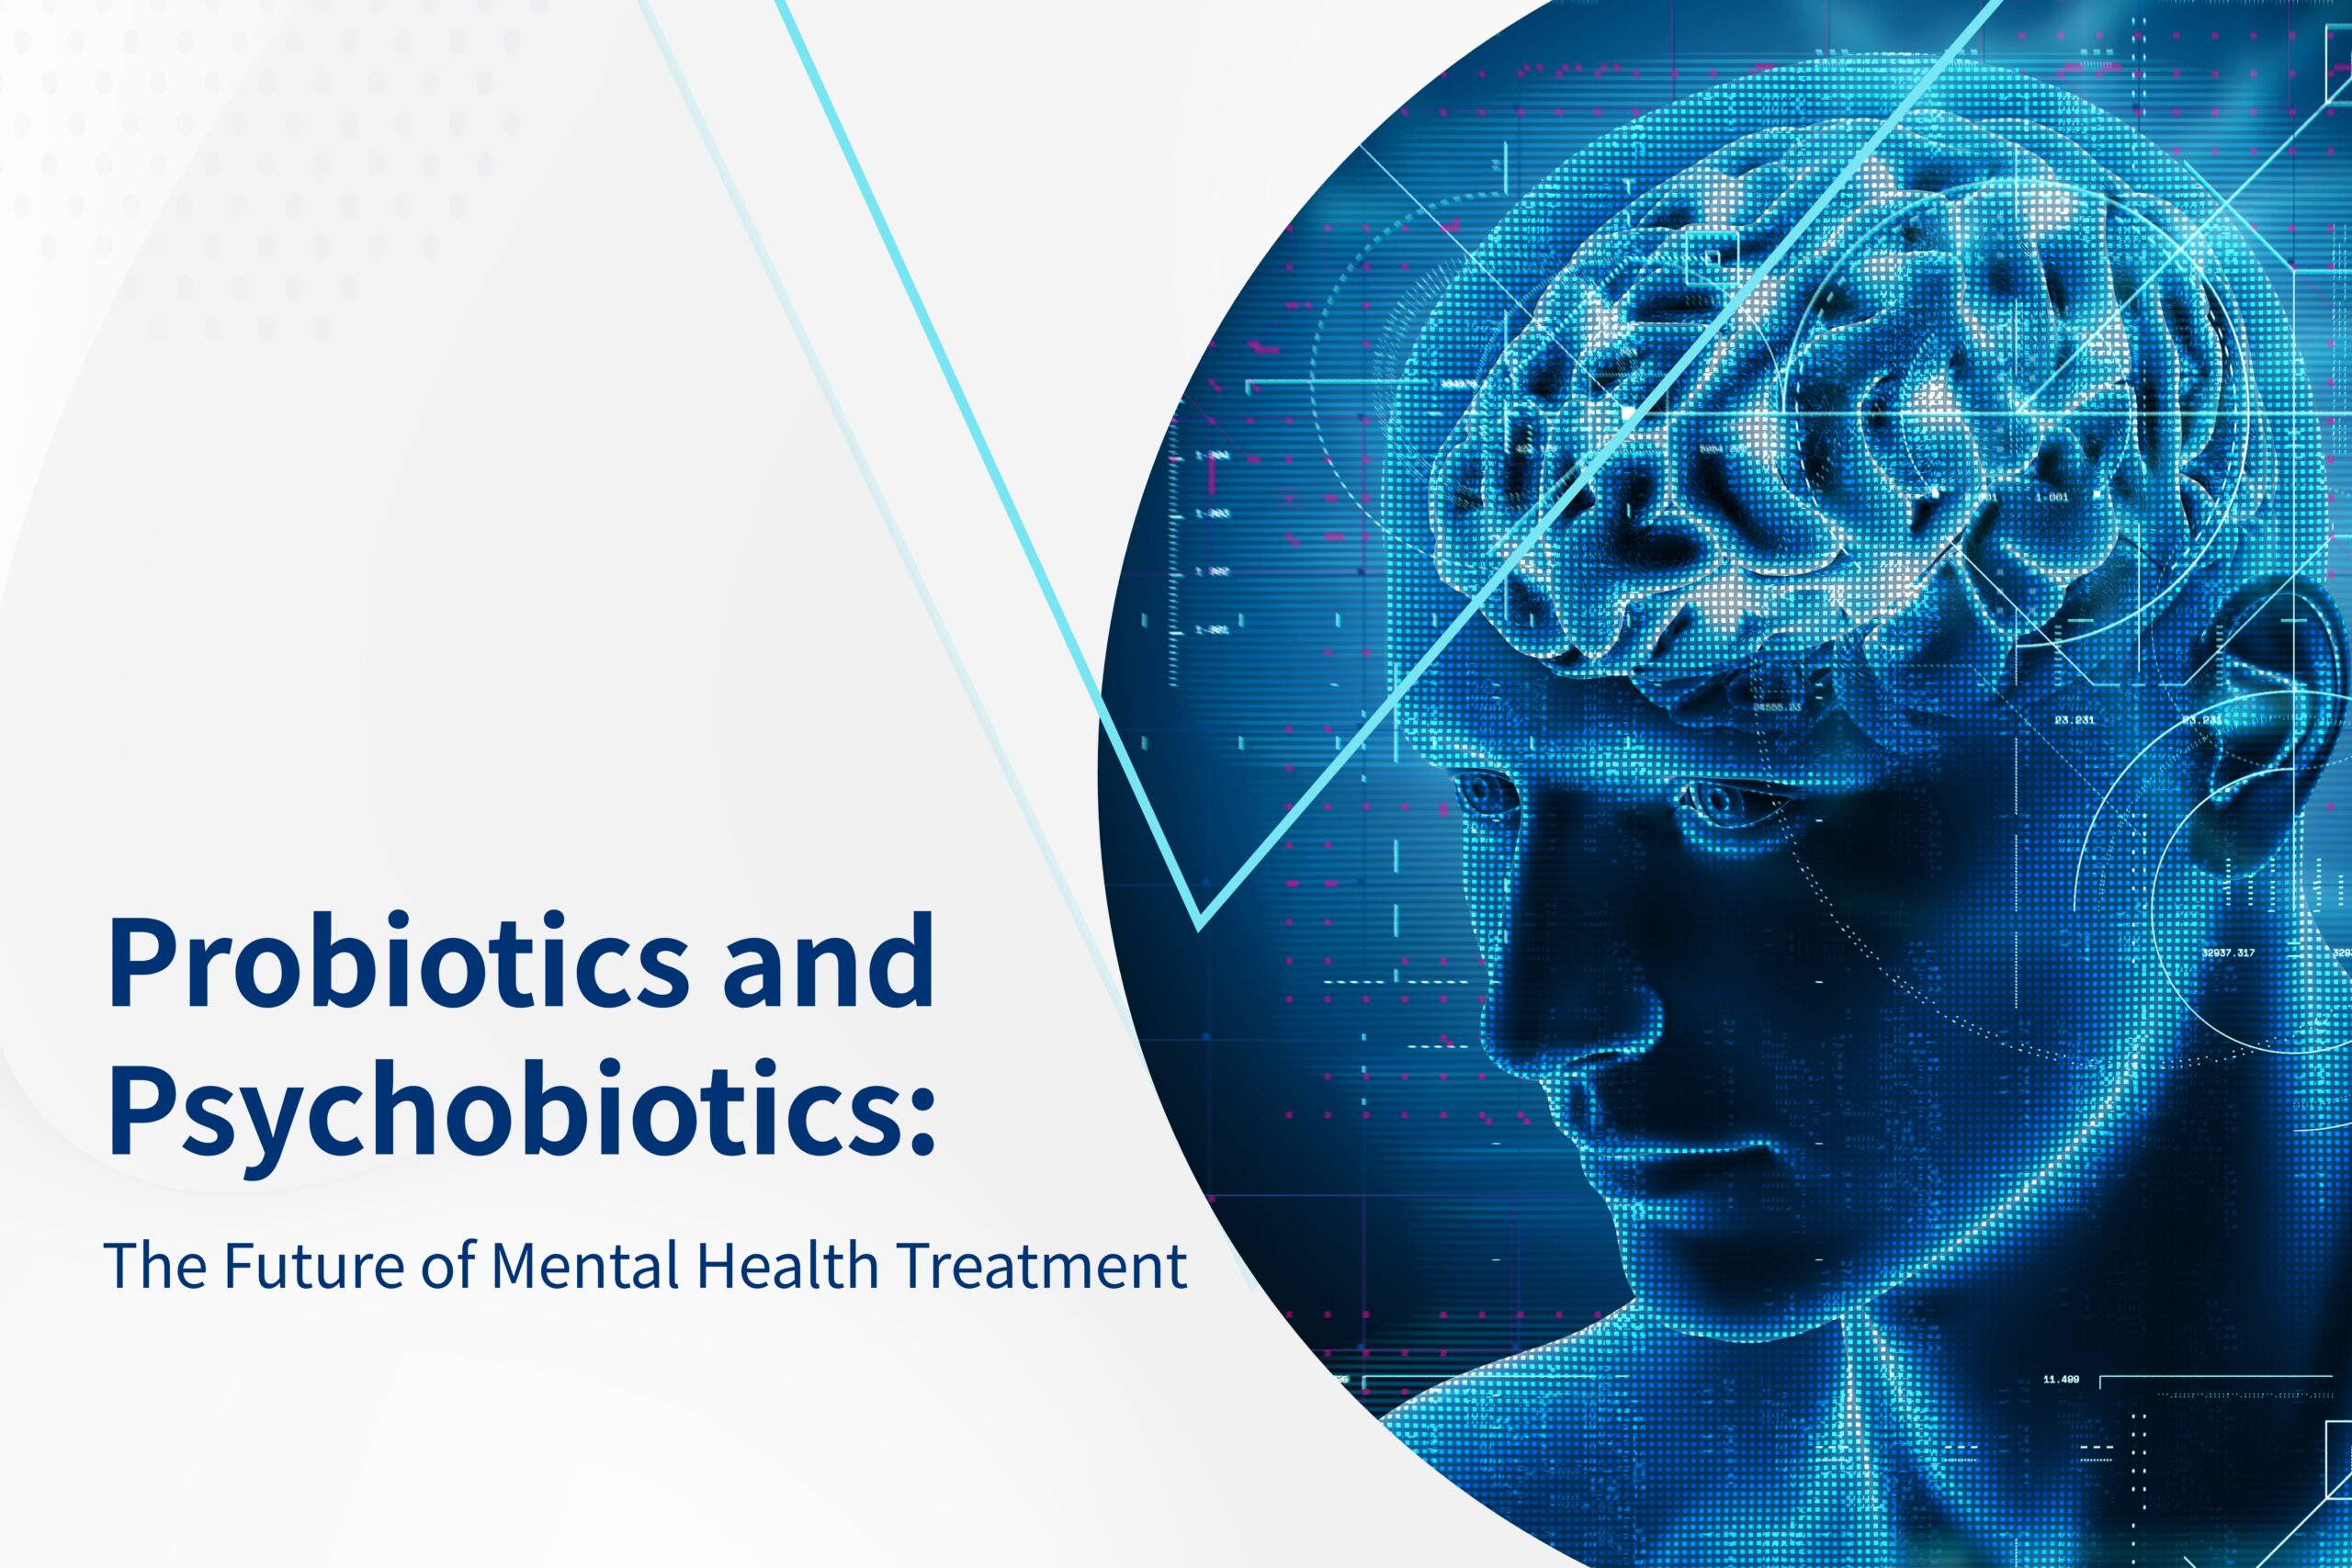 Probiotics and Psychobiotics: The Future of Mental Health Treatment